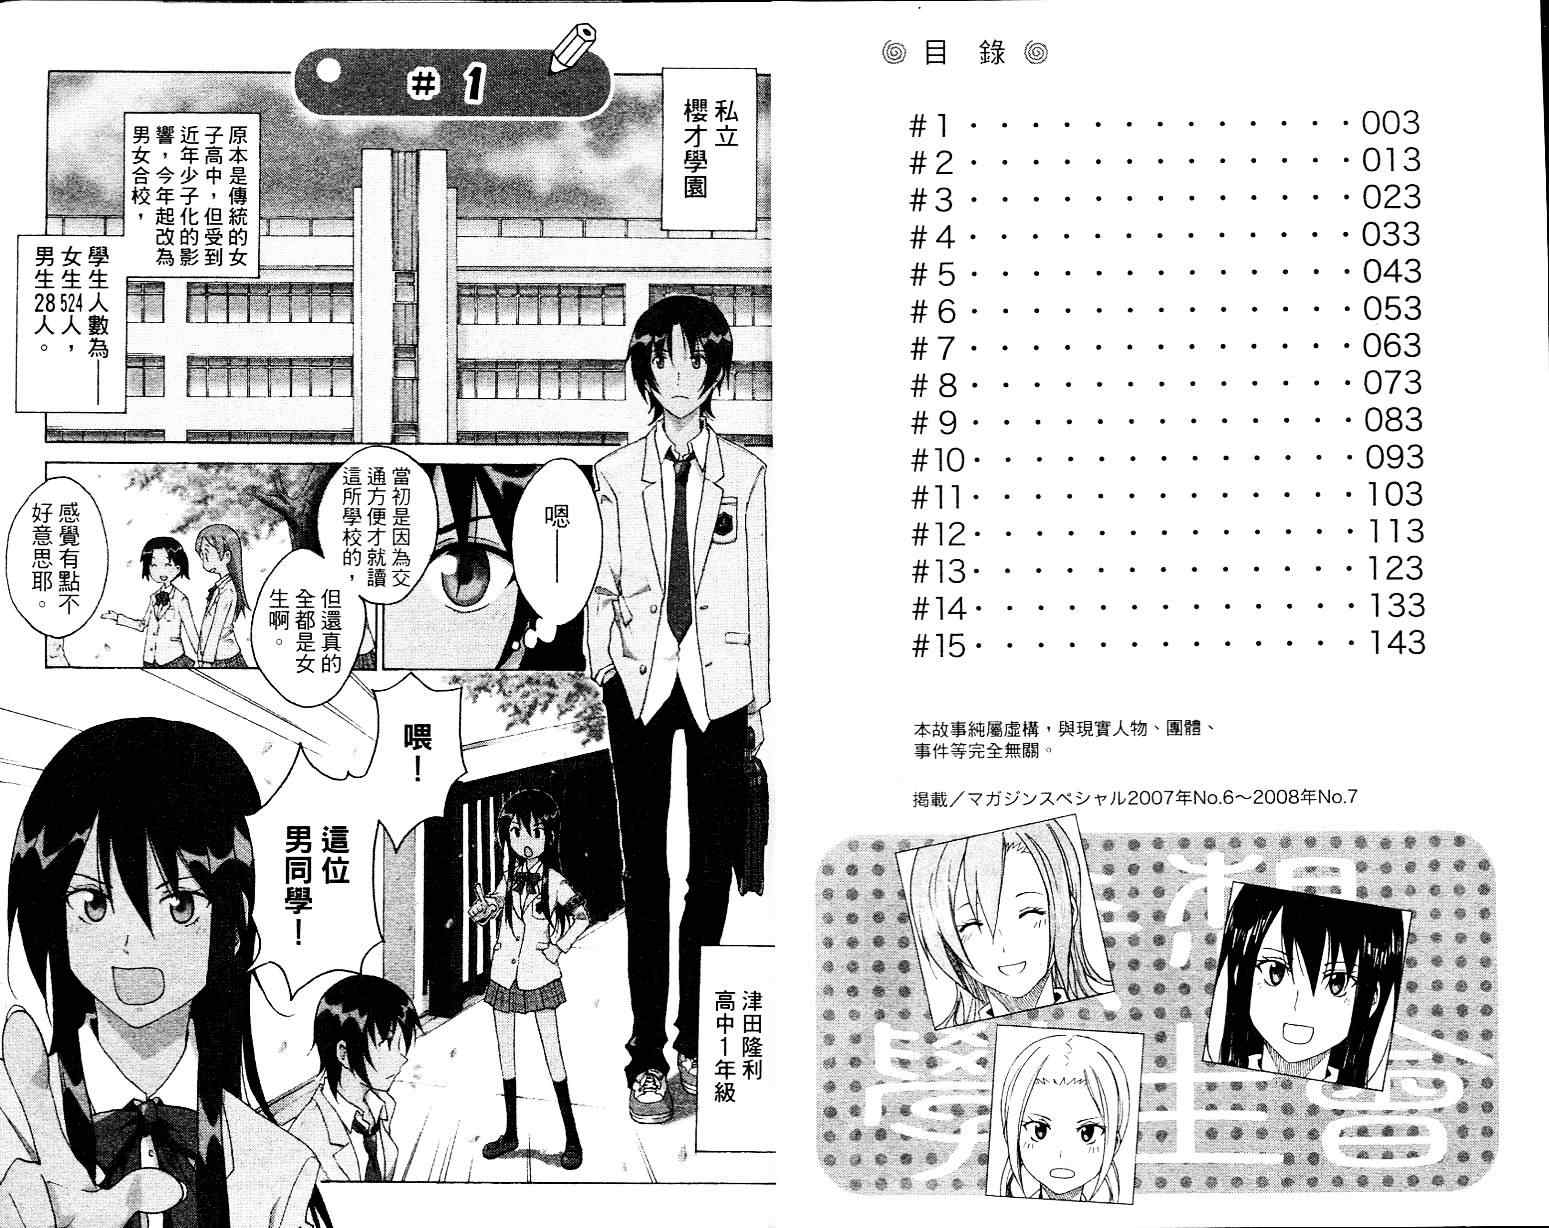 妄想学生会第01集漫画,第1卷3图